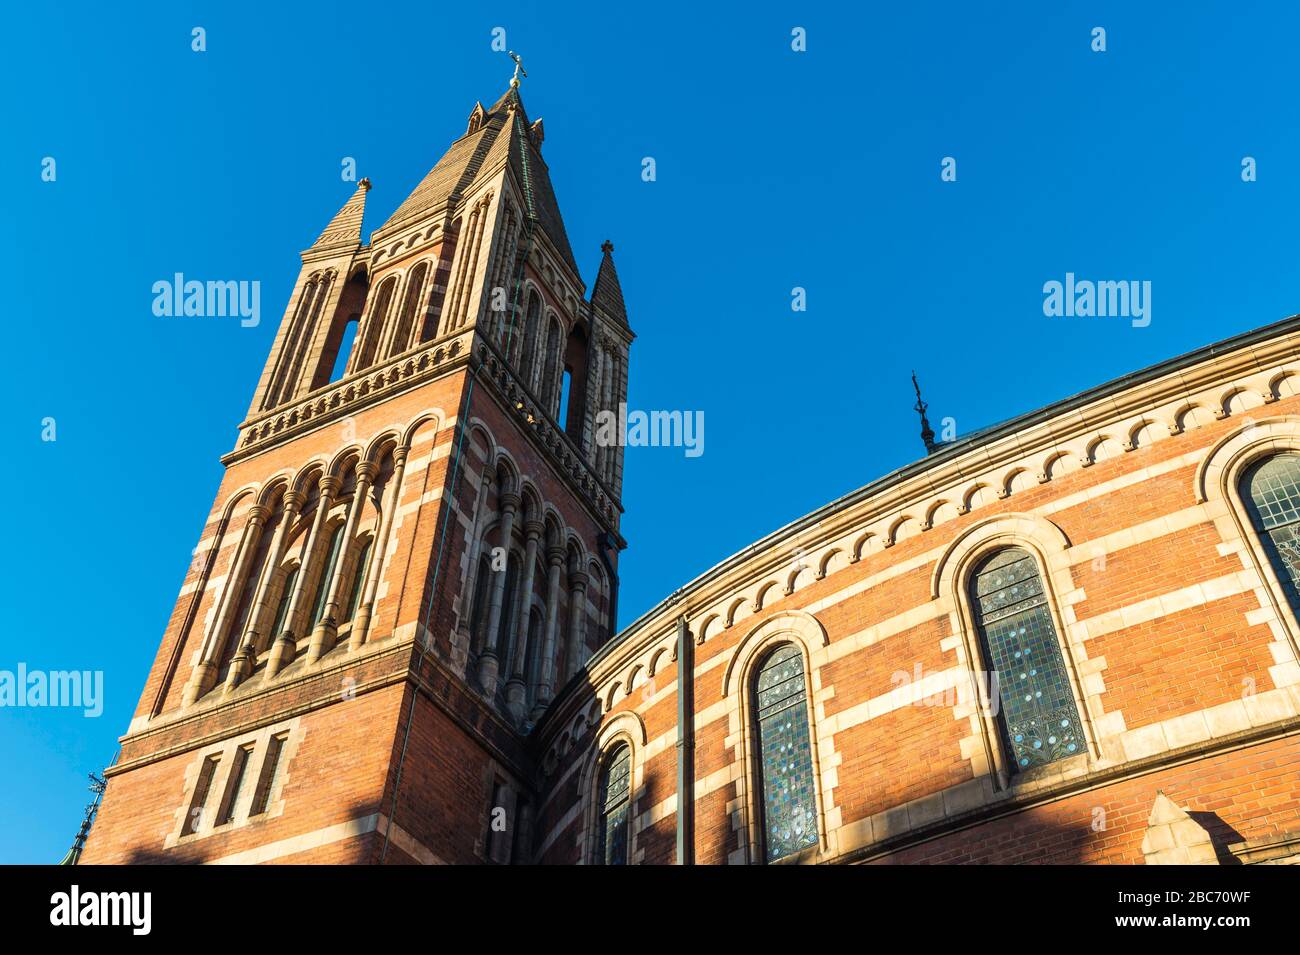 Cathédrale de la Sainte famille à Exile (1891) est une cathédrale catholique ukrainienne à Mayfair, dans le centre de Londres au Royaume-Uni. C'était autrefois une église congrégationnelle. Banque D'Images